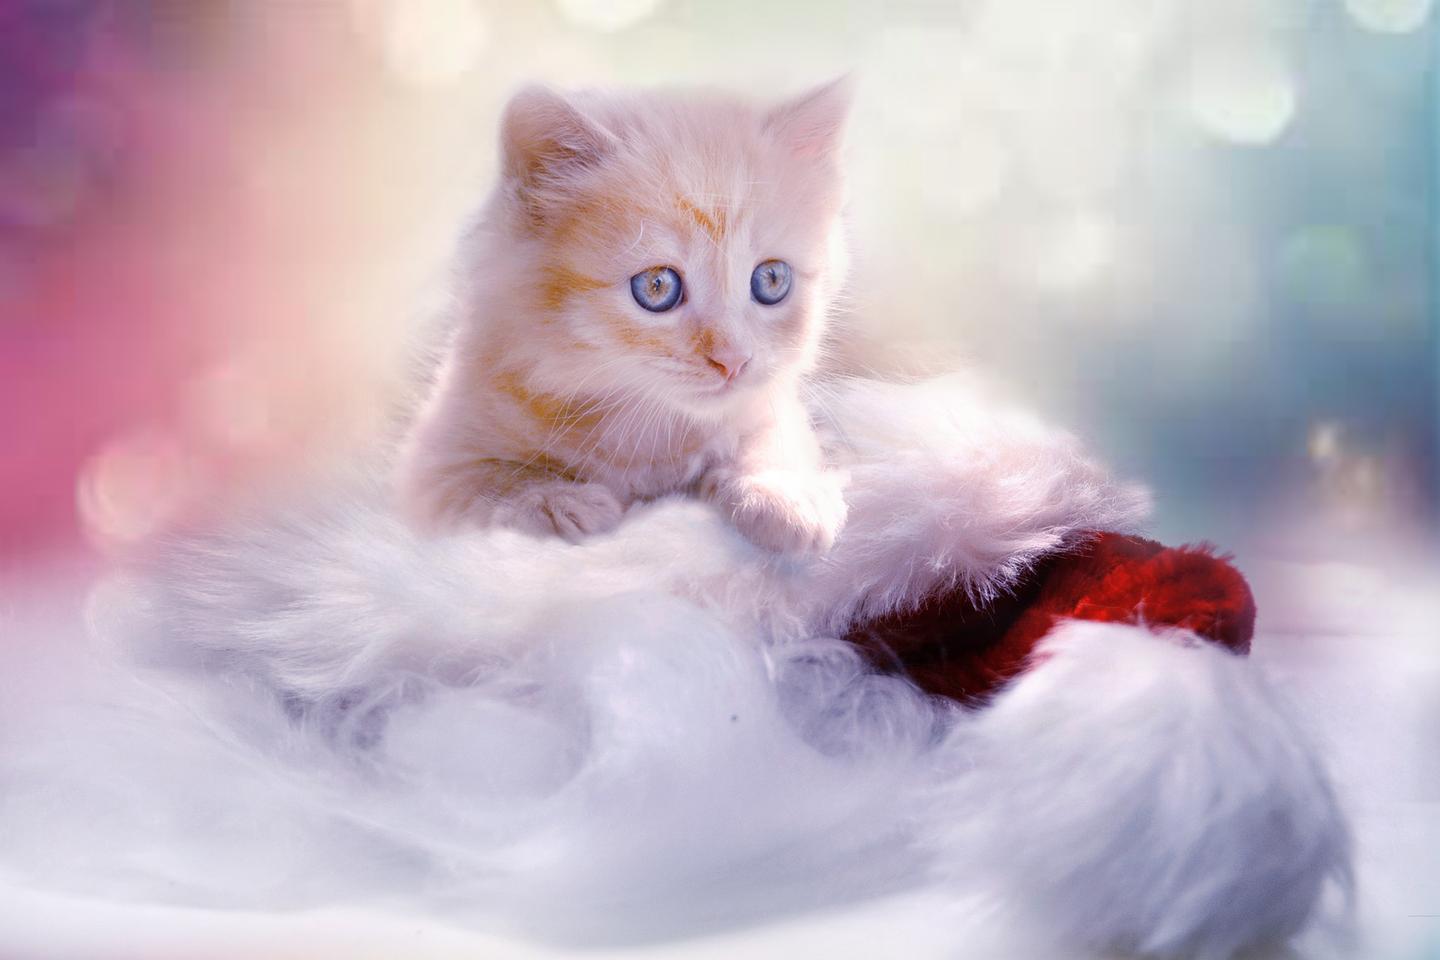 萌宠:分享一组可爱的猫咪壁纸,欢迎收藏!